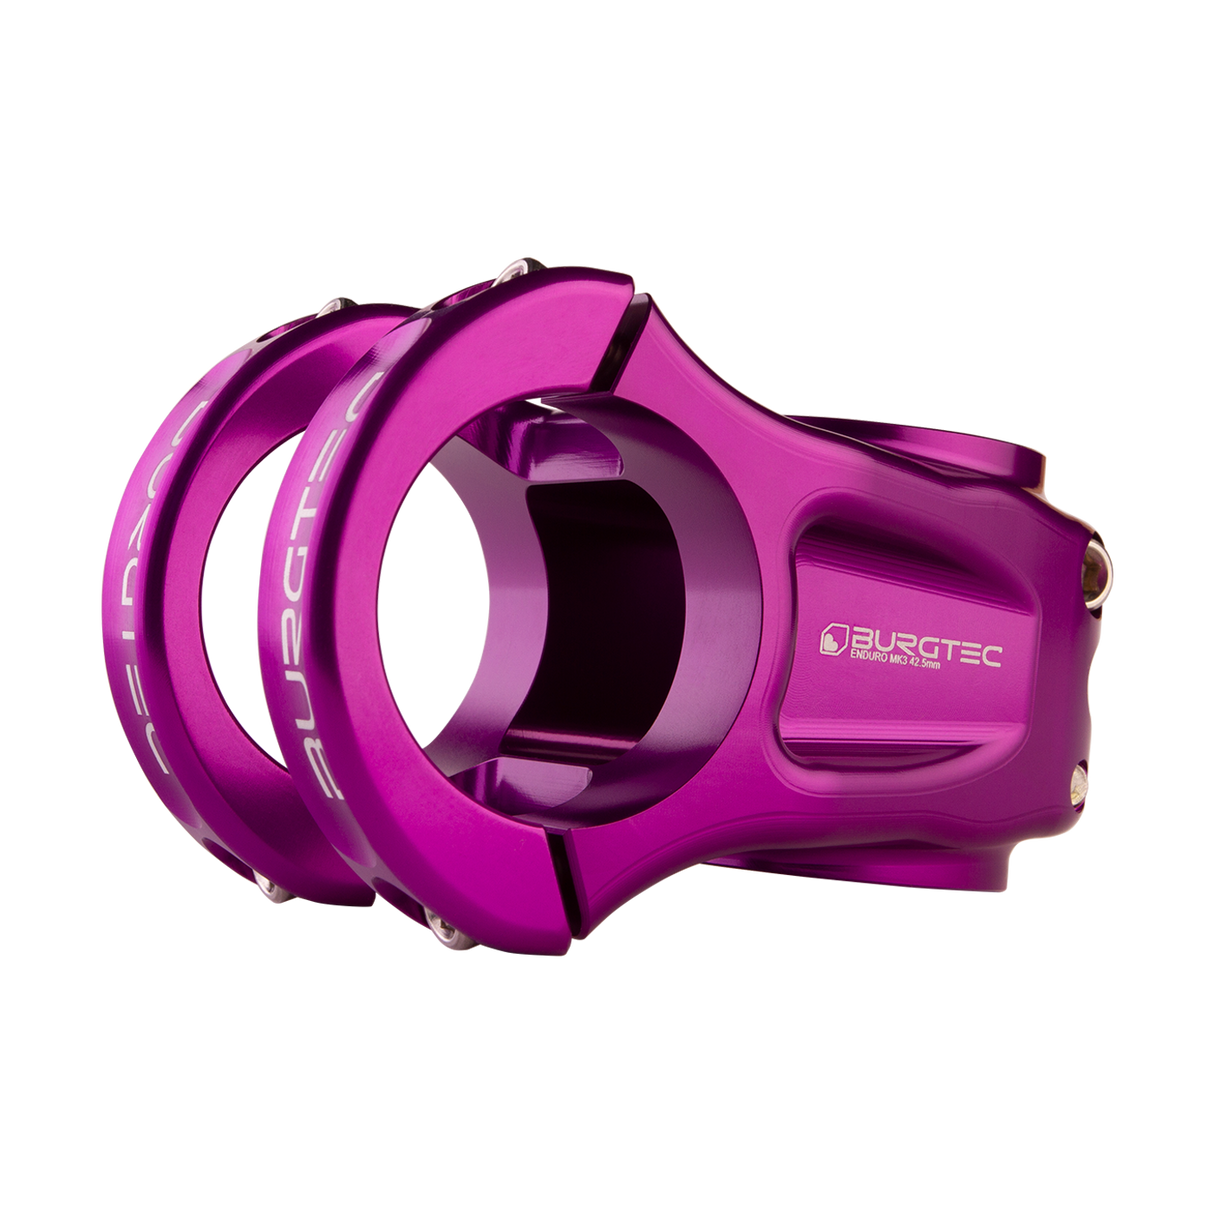 Enduro MK3 Stem - Purple Rain